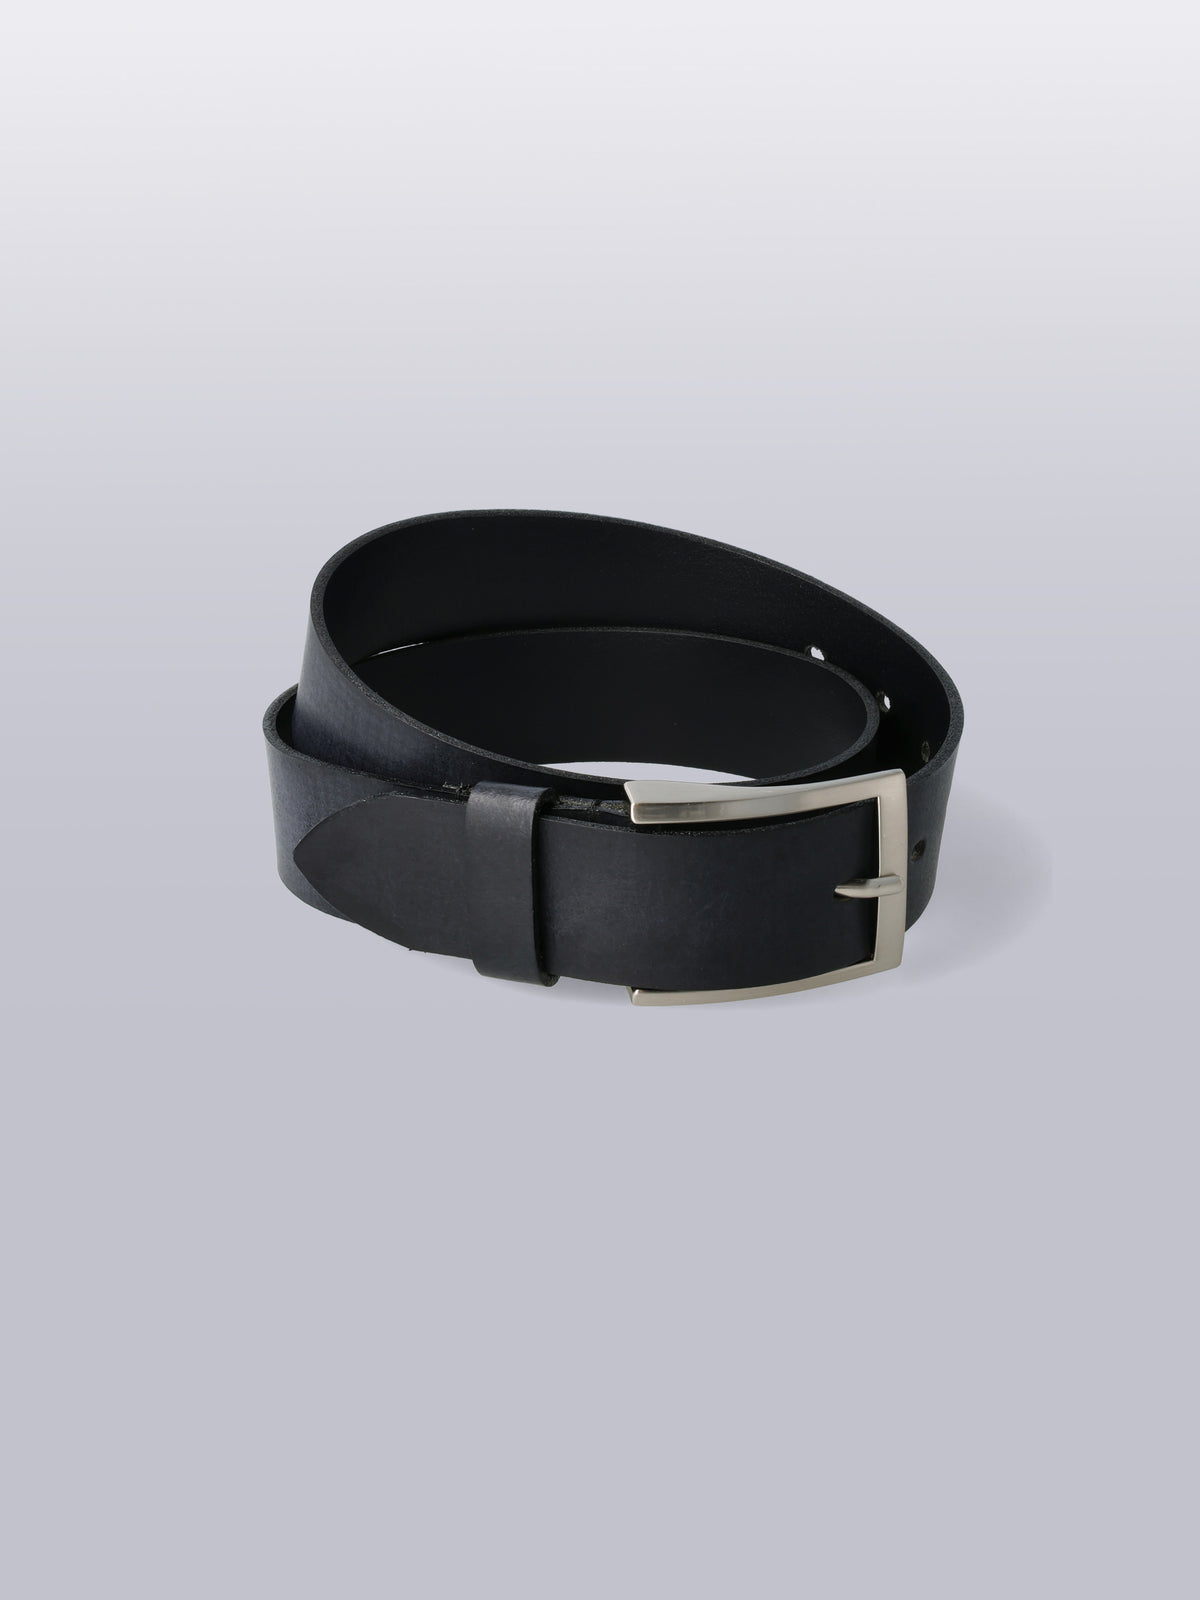 Mens belt 20mm  - black leather